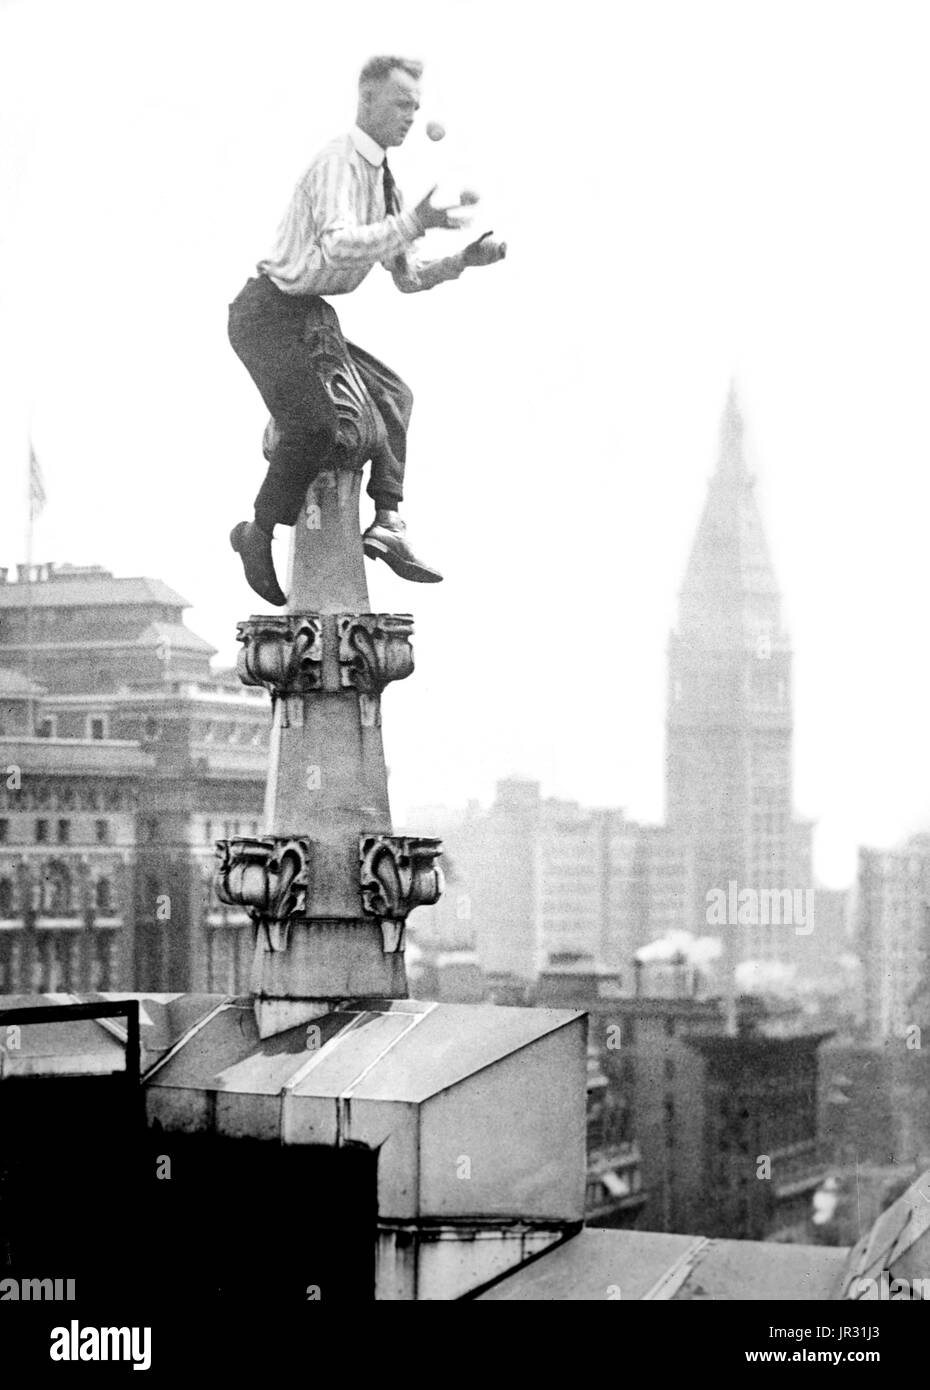 "Menschliche Fliege" Reynolds Dach Dekoration in New York City. John "Jammie" Reynolds (geboren 1890 oder 91 -?) war ein US-amerikanischer Draufgänger. Wenig ist bekannt über das frühe Leben, was aus ihm geworden, nachdem er durchführen oder sogar sein richtiger Name gestoppt. Ein Acrobat und Jongleur, wurde er unter vielen Namen - Daredevil Johnny, Draufgänger Jack das Klettern Weltwunder, die Eidechse, die menschliche Spinne und menschliche fliegen bekannt. Ein Zeitungsartikel von 1922 behauptet, dass er begann im Alter von sechs in Buffalo, balancieren auf einem Bein aus einem Fahnenmast 140 Füße in der Luft. Seinen ersten großen Stunt kam im Alter von 12, als er der Seite kletterte Stockfoto